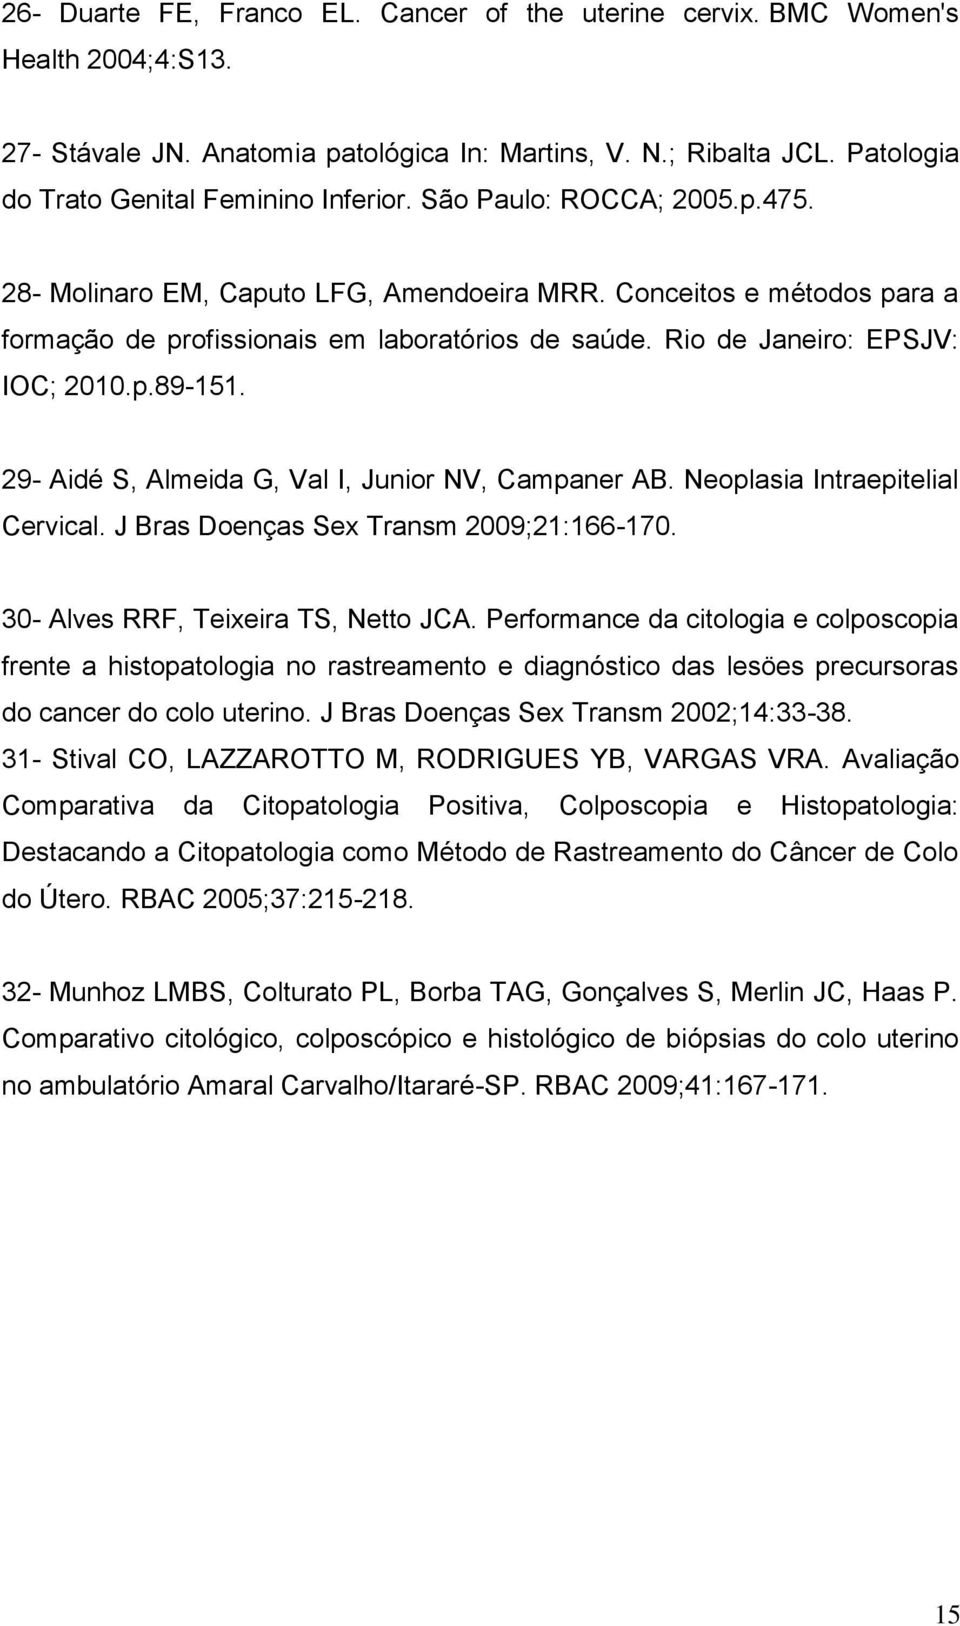 Rio de Janeiro: EPSJV: IOC; 2010.p.89-151. 29- Aidé S, Almeida G, Val I, Junior NV, Campaner AB. Neoplasia Intraepitelial Cervical. J Bras Doenças Sex Transm 2009;21:166-170.